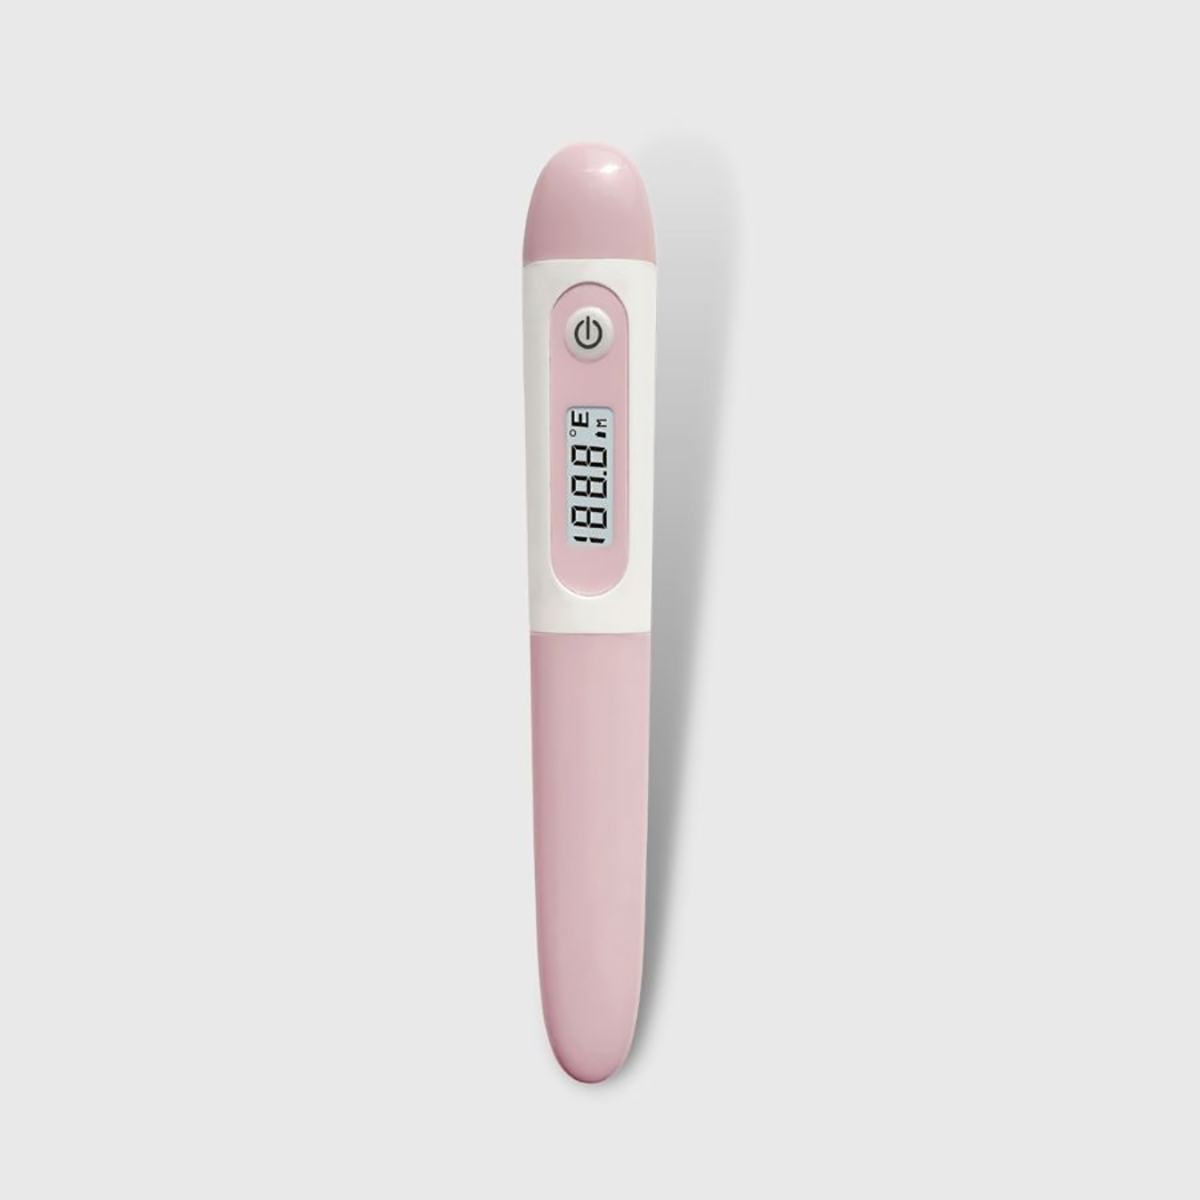 CE MDR klinički digitalni kruti termometar za odrasle ispod pazuha, prijenosni za dojenje